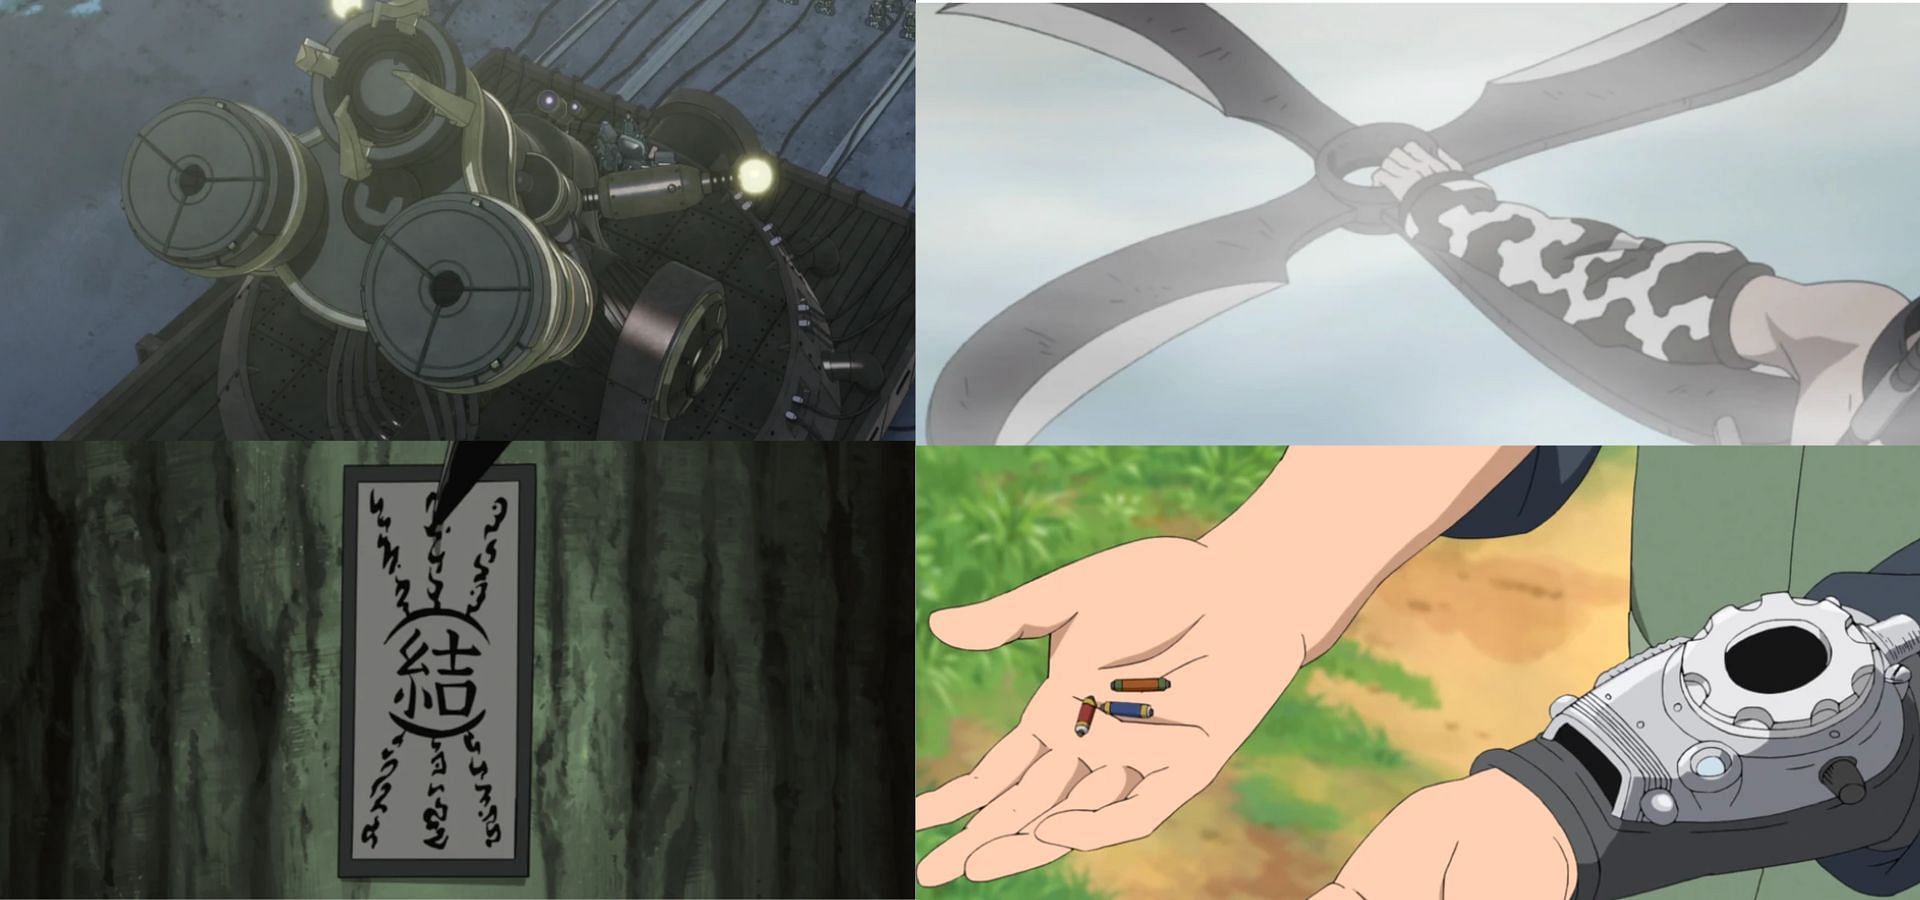  Best uses of ninja tools in Naruto (Image via Pierrot)